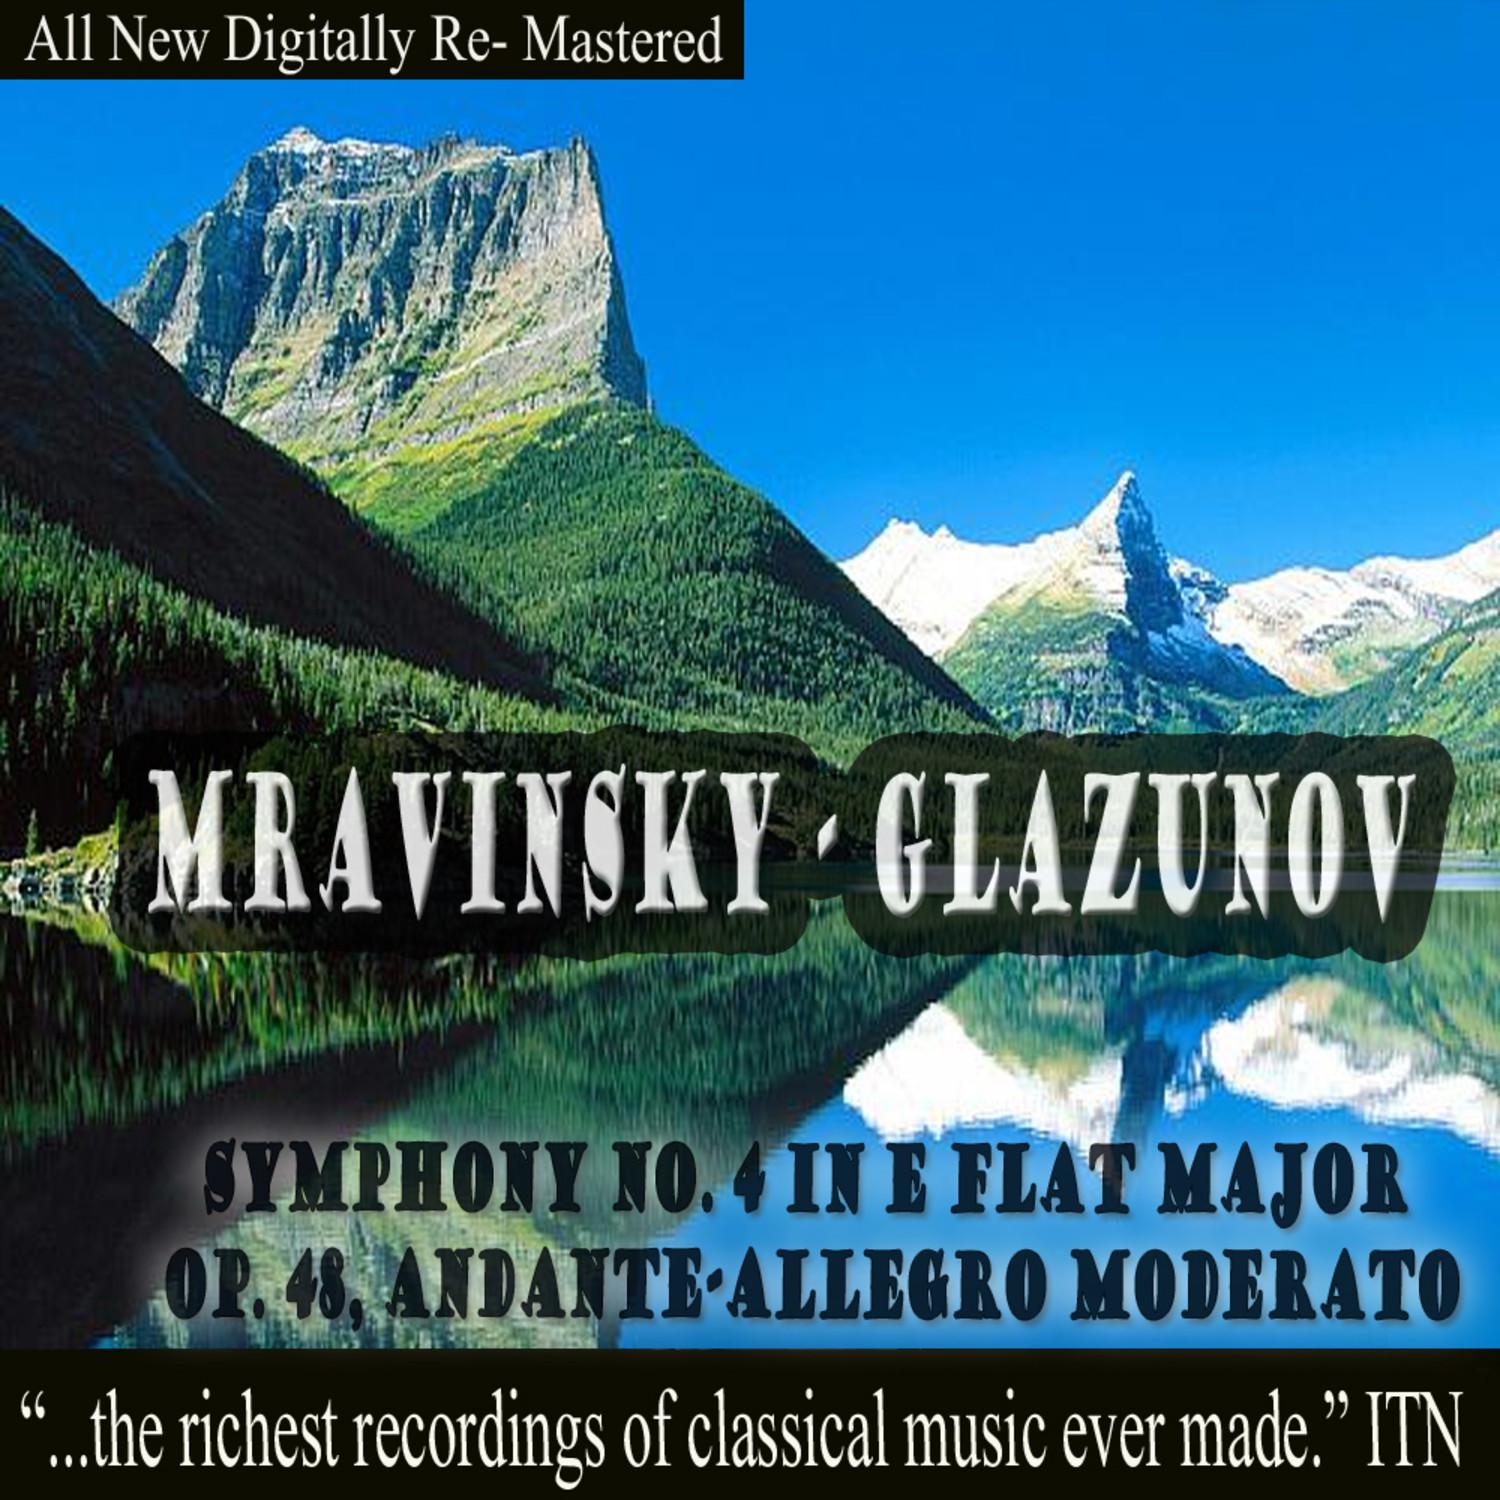 Glazunov: Symphony No. 4 in E-Flat Major Op. 48